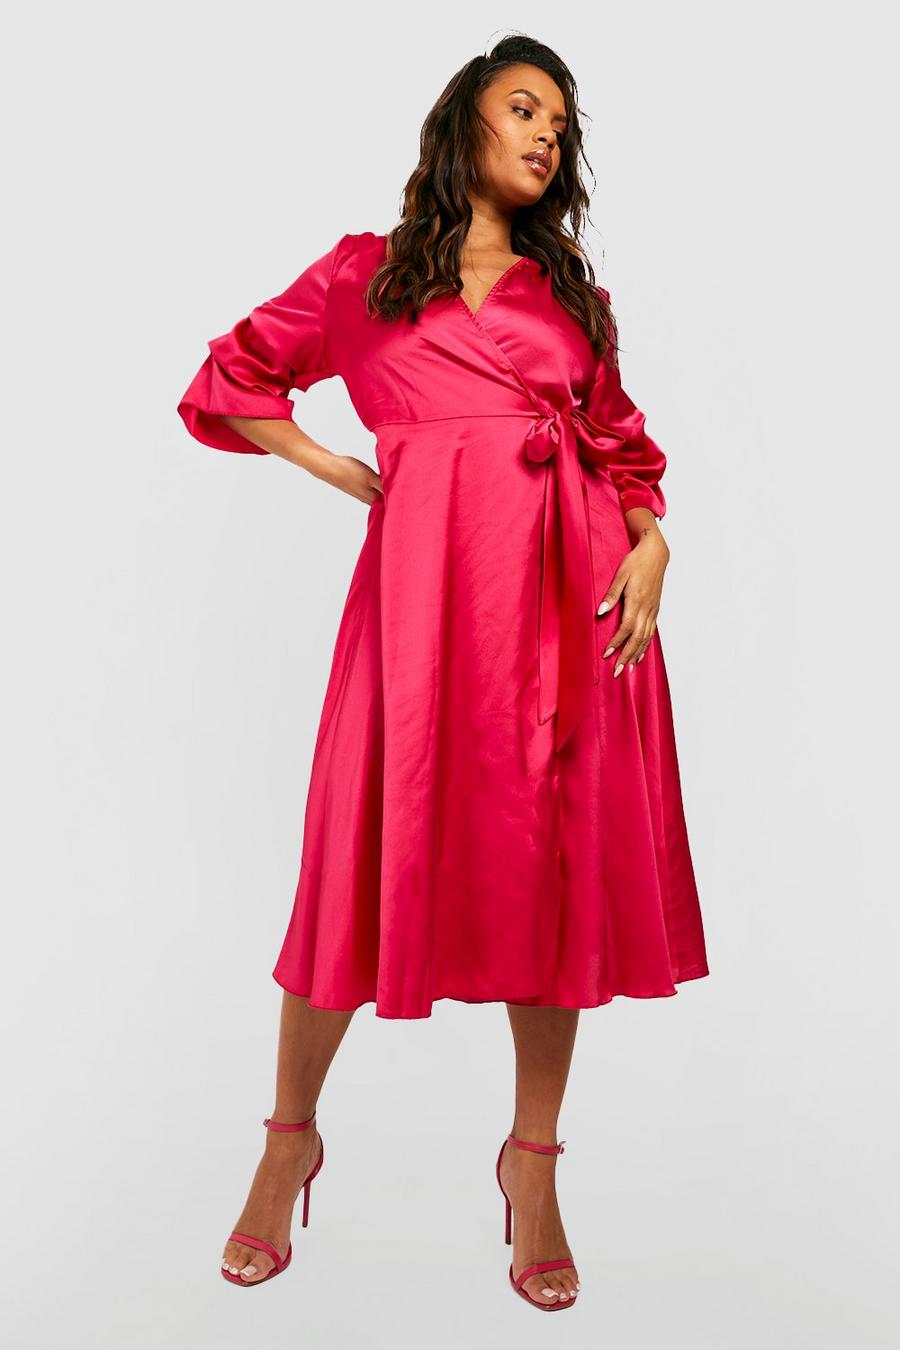 Grande taille - Robe portefeuille satinée à manches froncées, Hot pink rosa